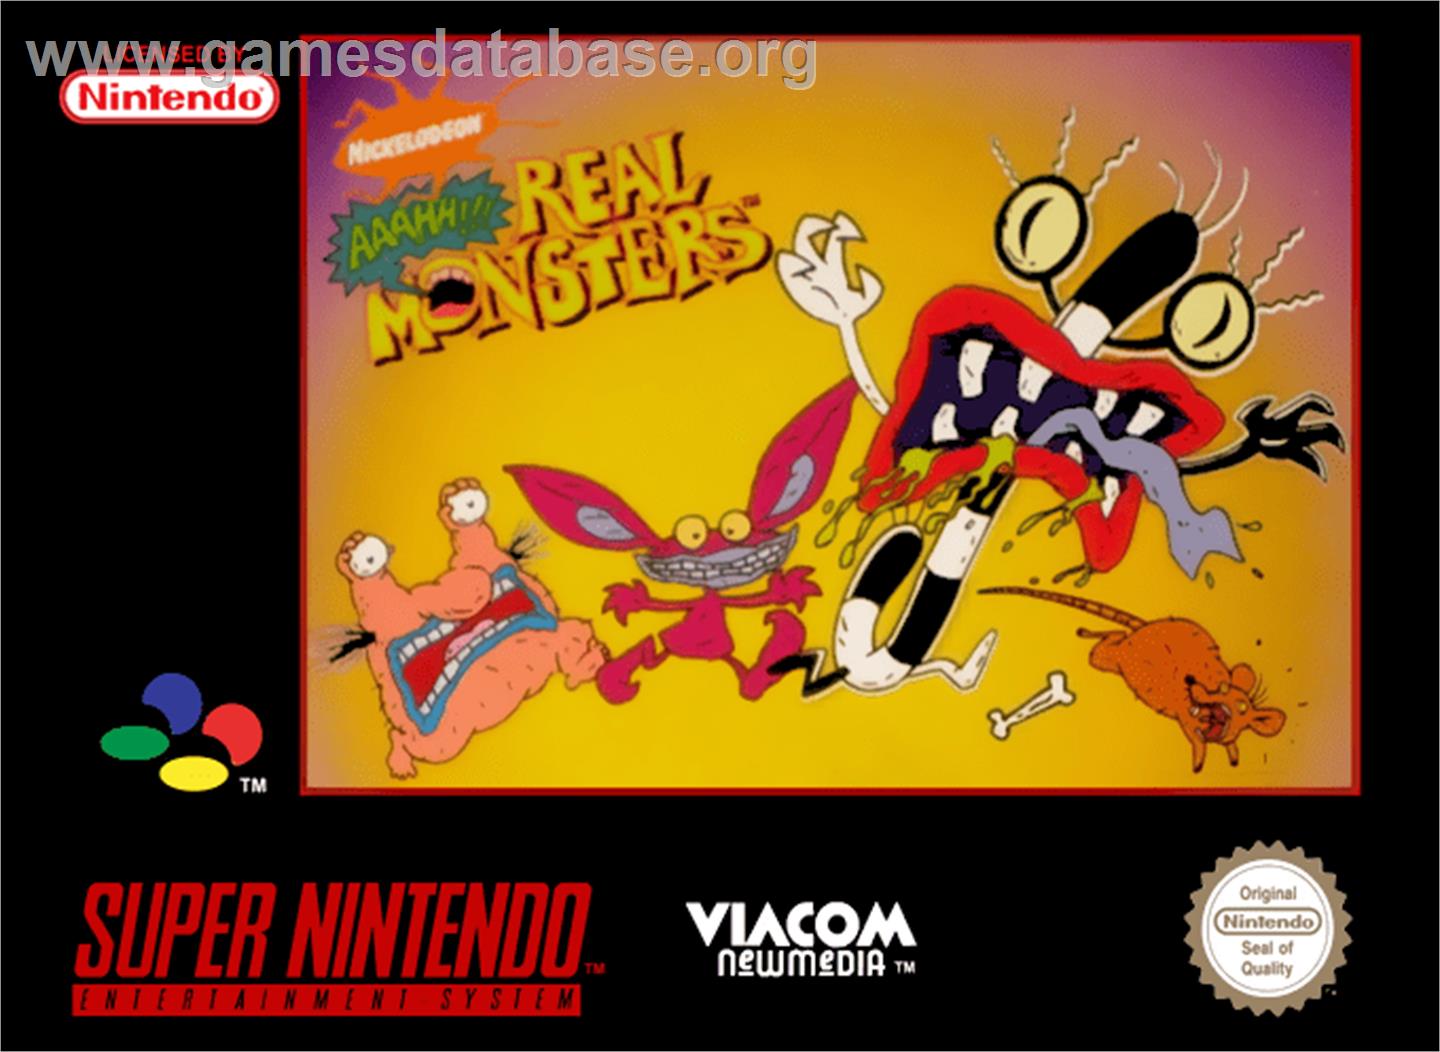 Nickelodeon: Aaahh!!! Real Monsters - Nintendo SNES - Artwork - Box